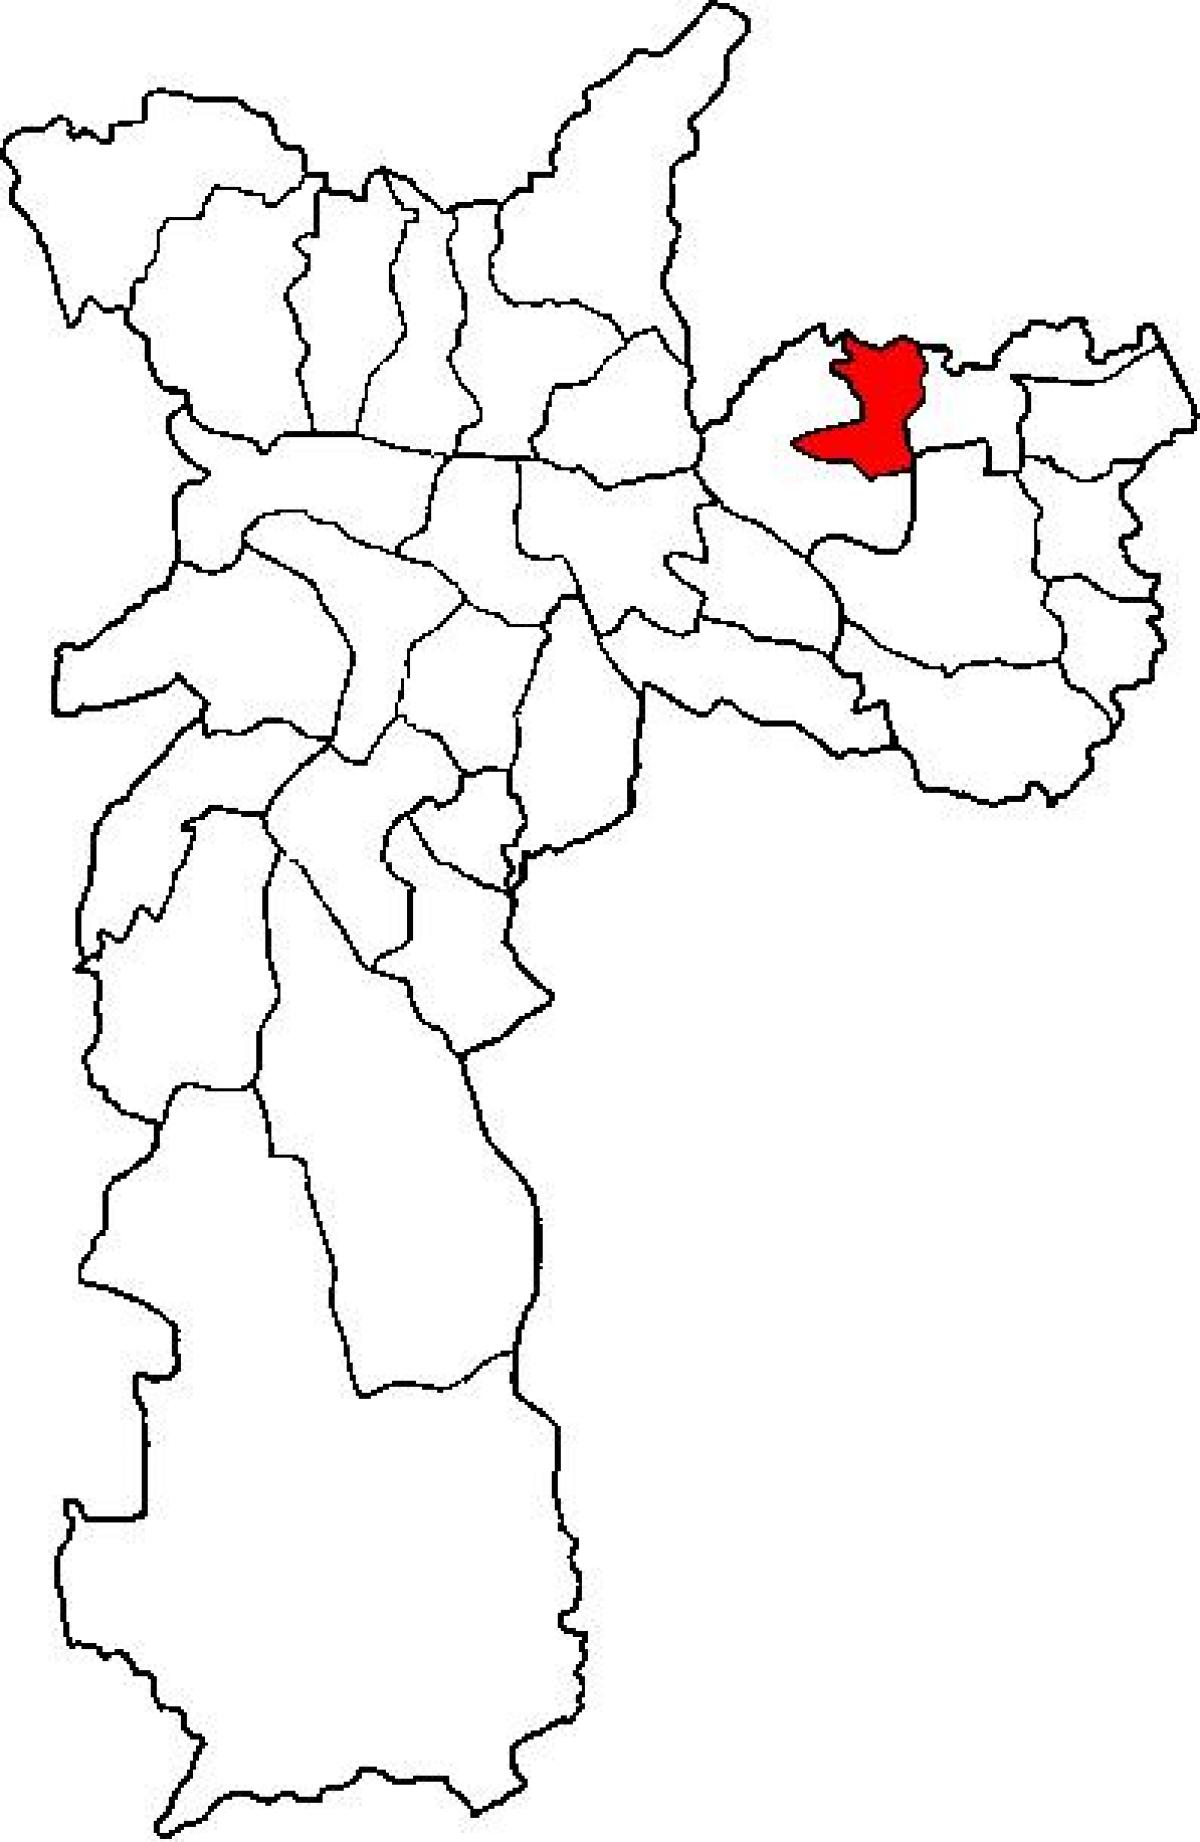 Mappa di Ermelino Matarazzo sub-prefettura di São Paulo